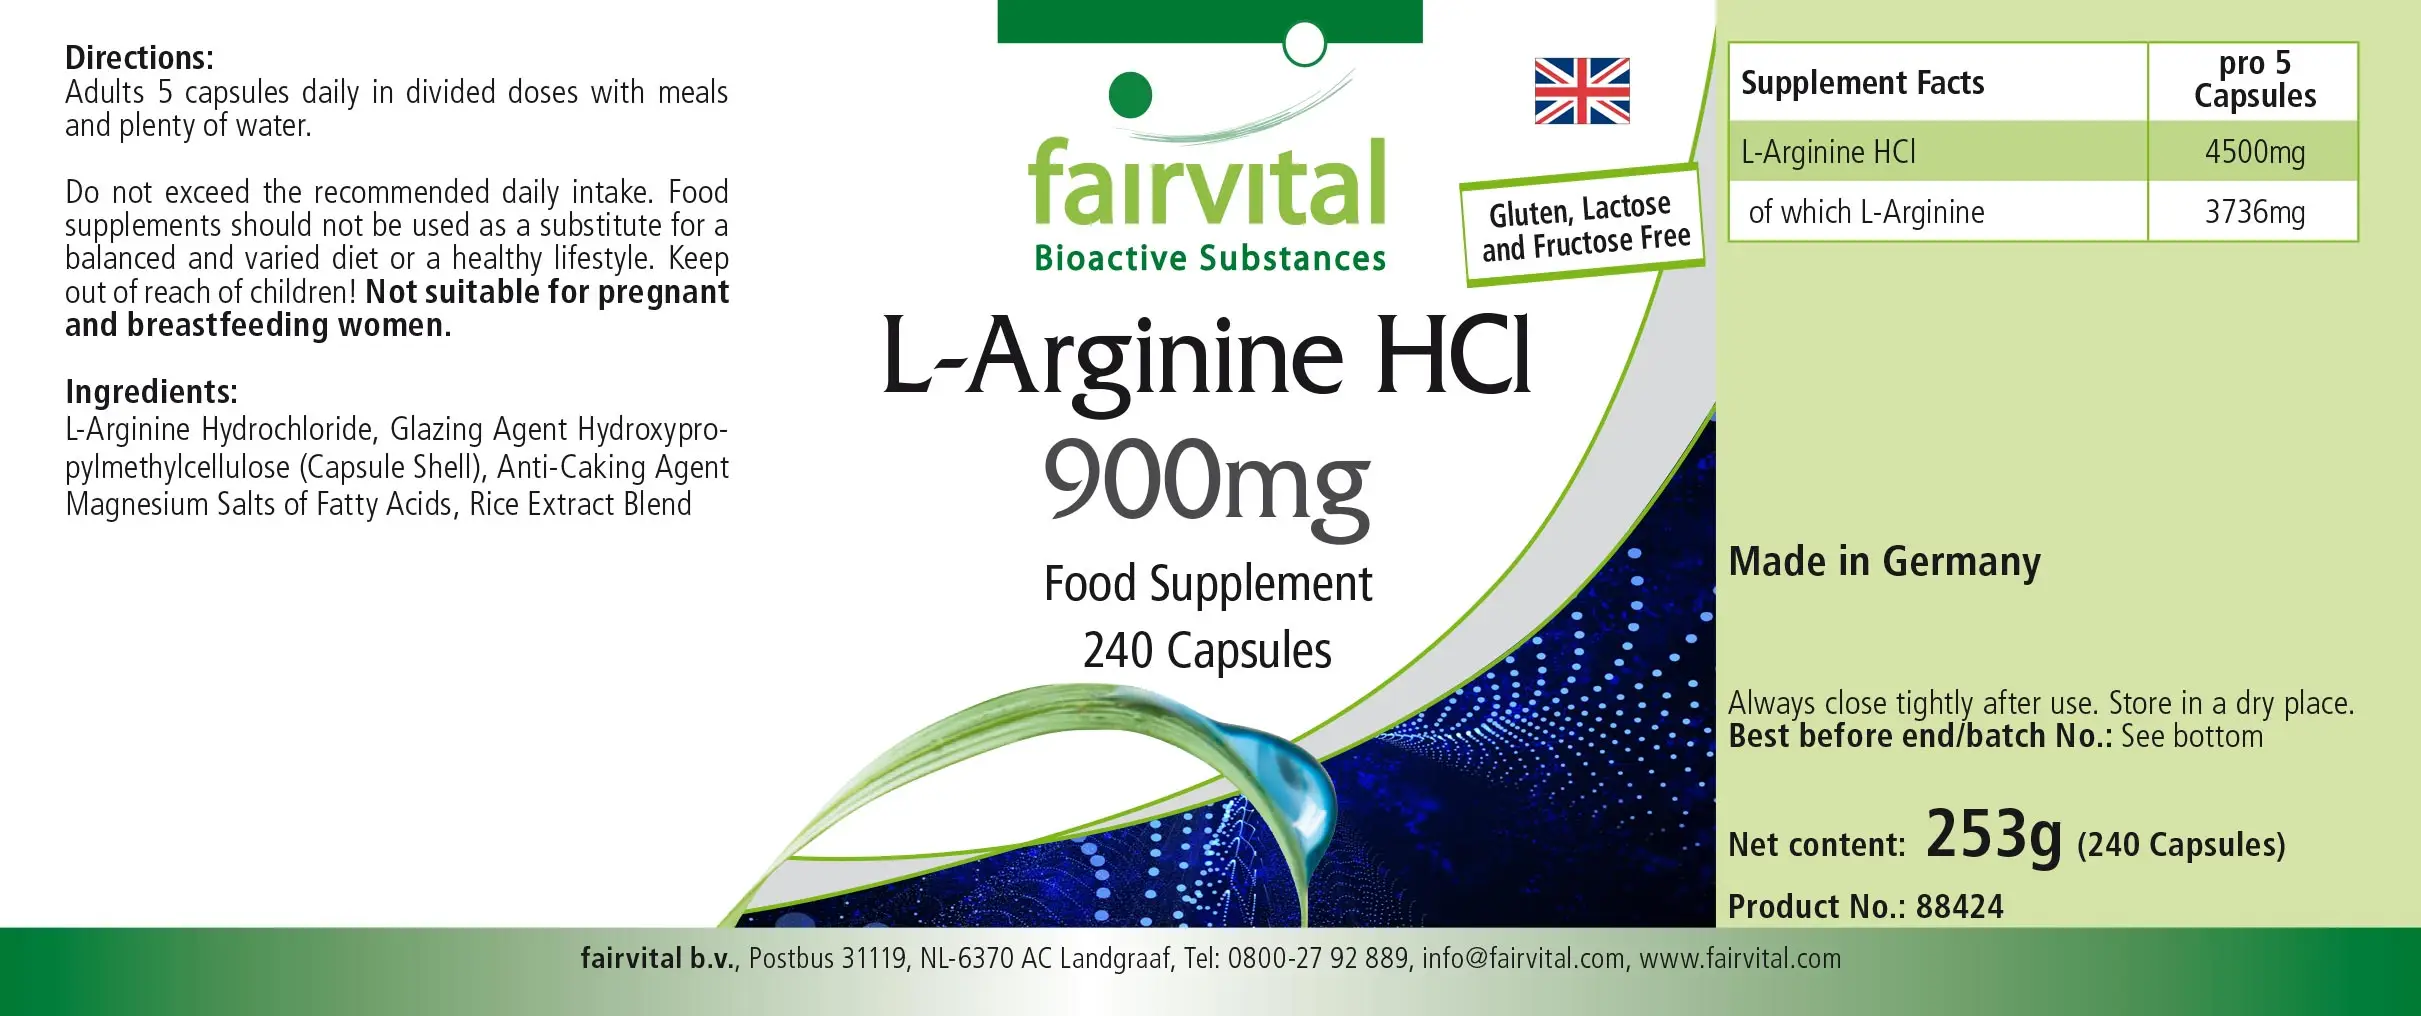 L-Arginin-HCL 900mg